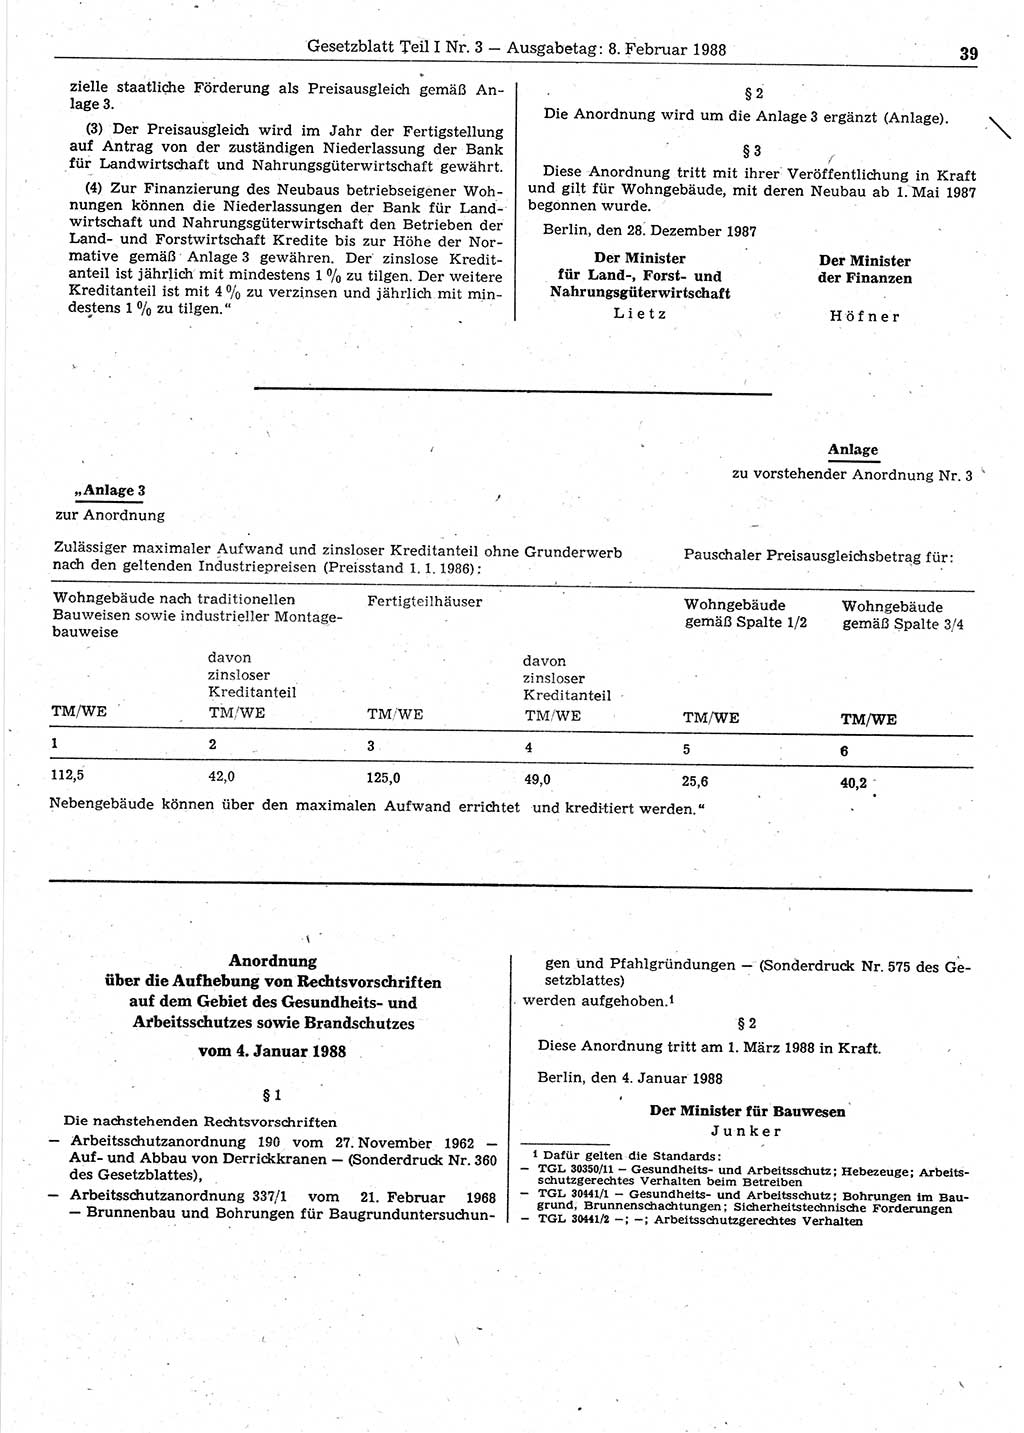 Gesetzblatt (GBl.) der Deutschen Demokratischen Republik (DDR) Teil Ⅰ 1988, Seite 39 (GBl. DDR Ⅰ 1988, S. 39)